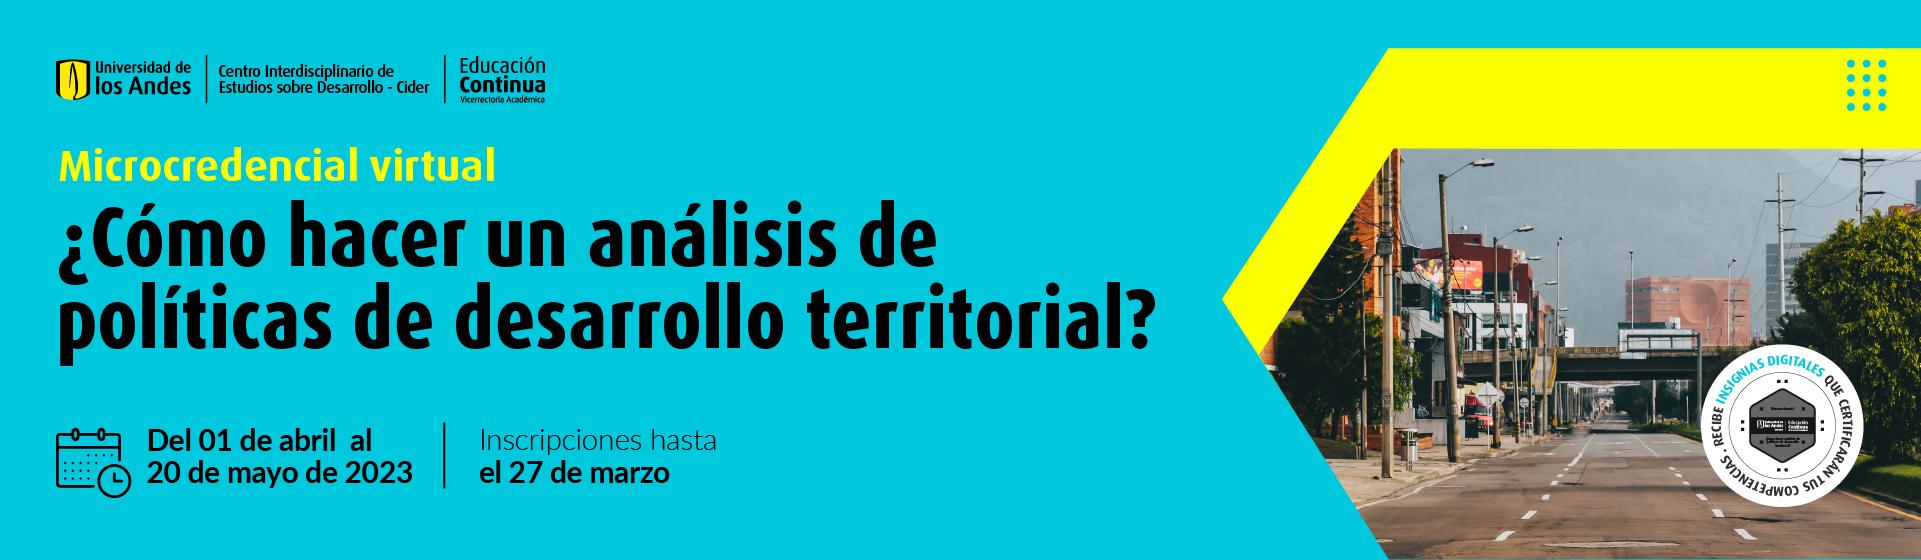 Microcredencial ¿Cómo hacer un análisis de políticas de desarrollo territorial?